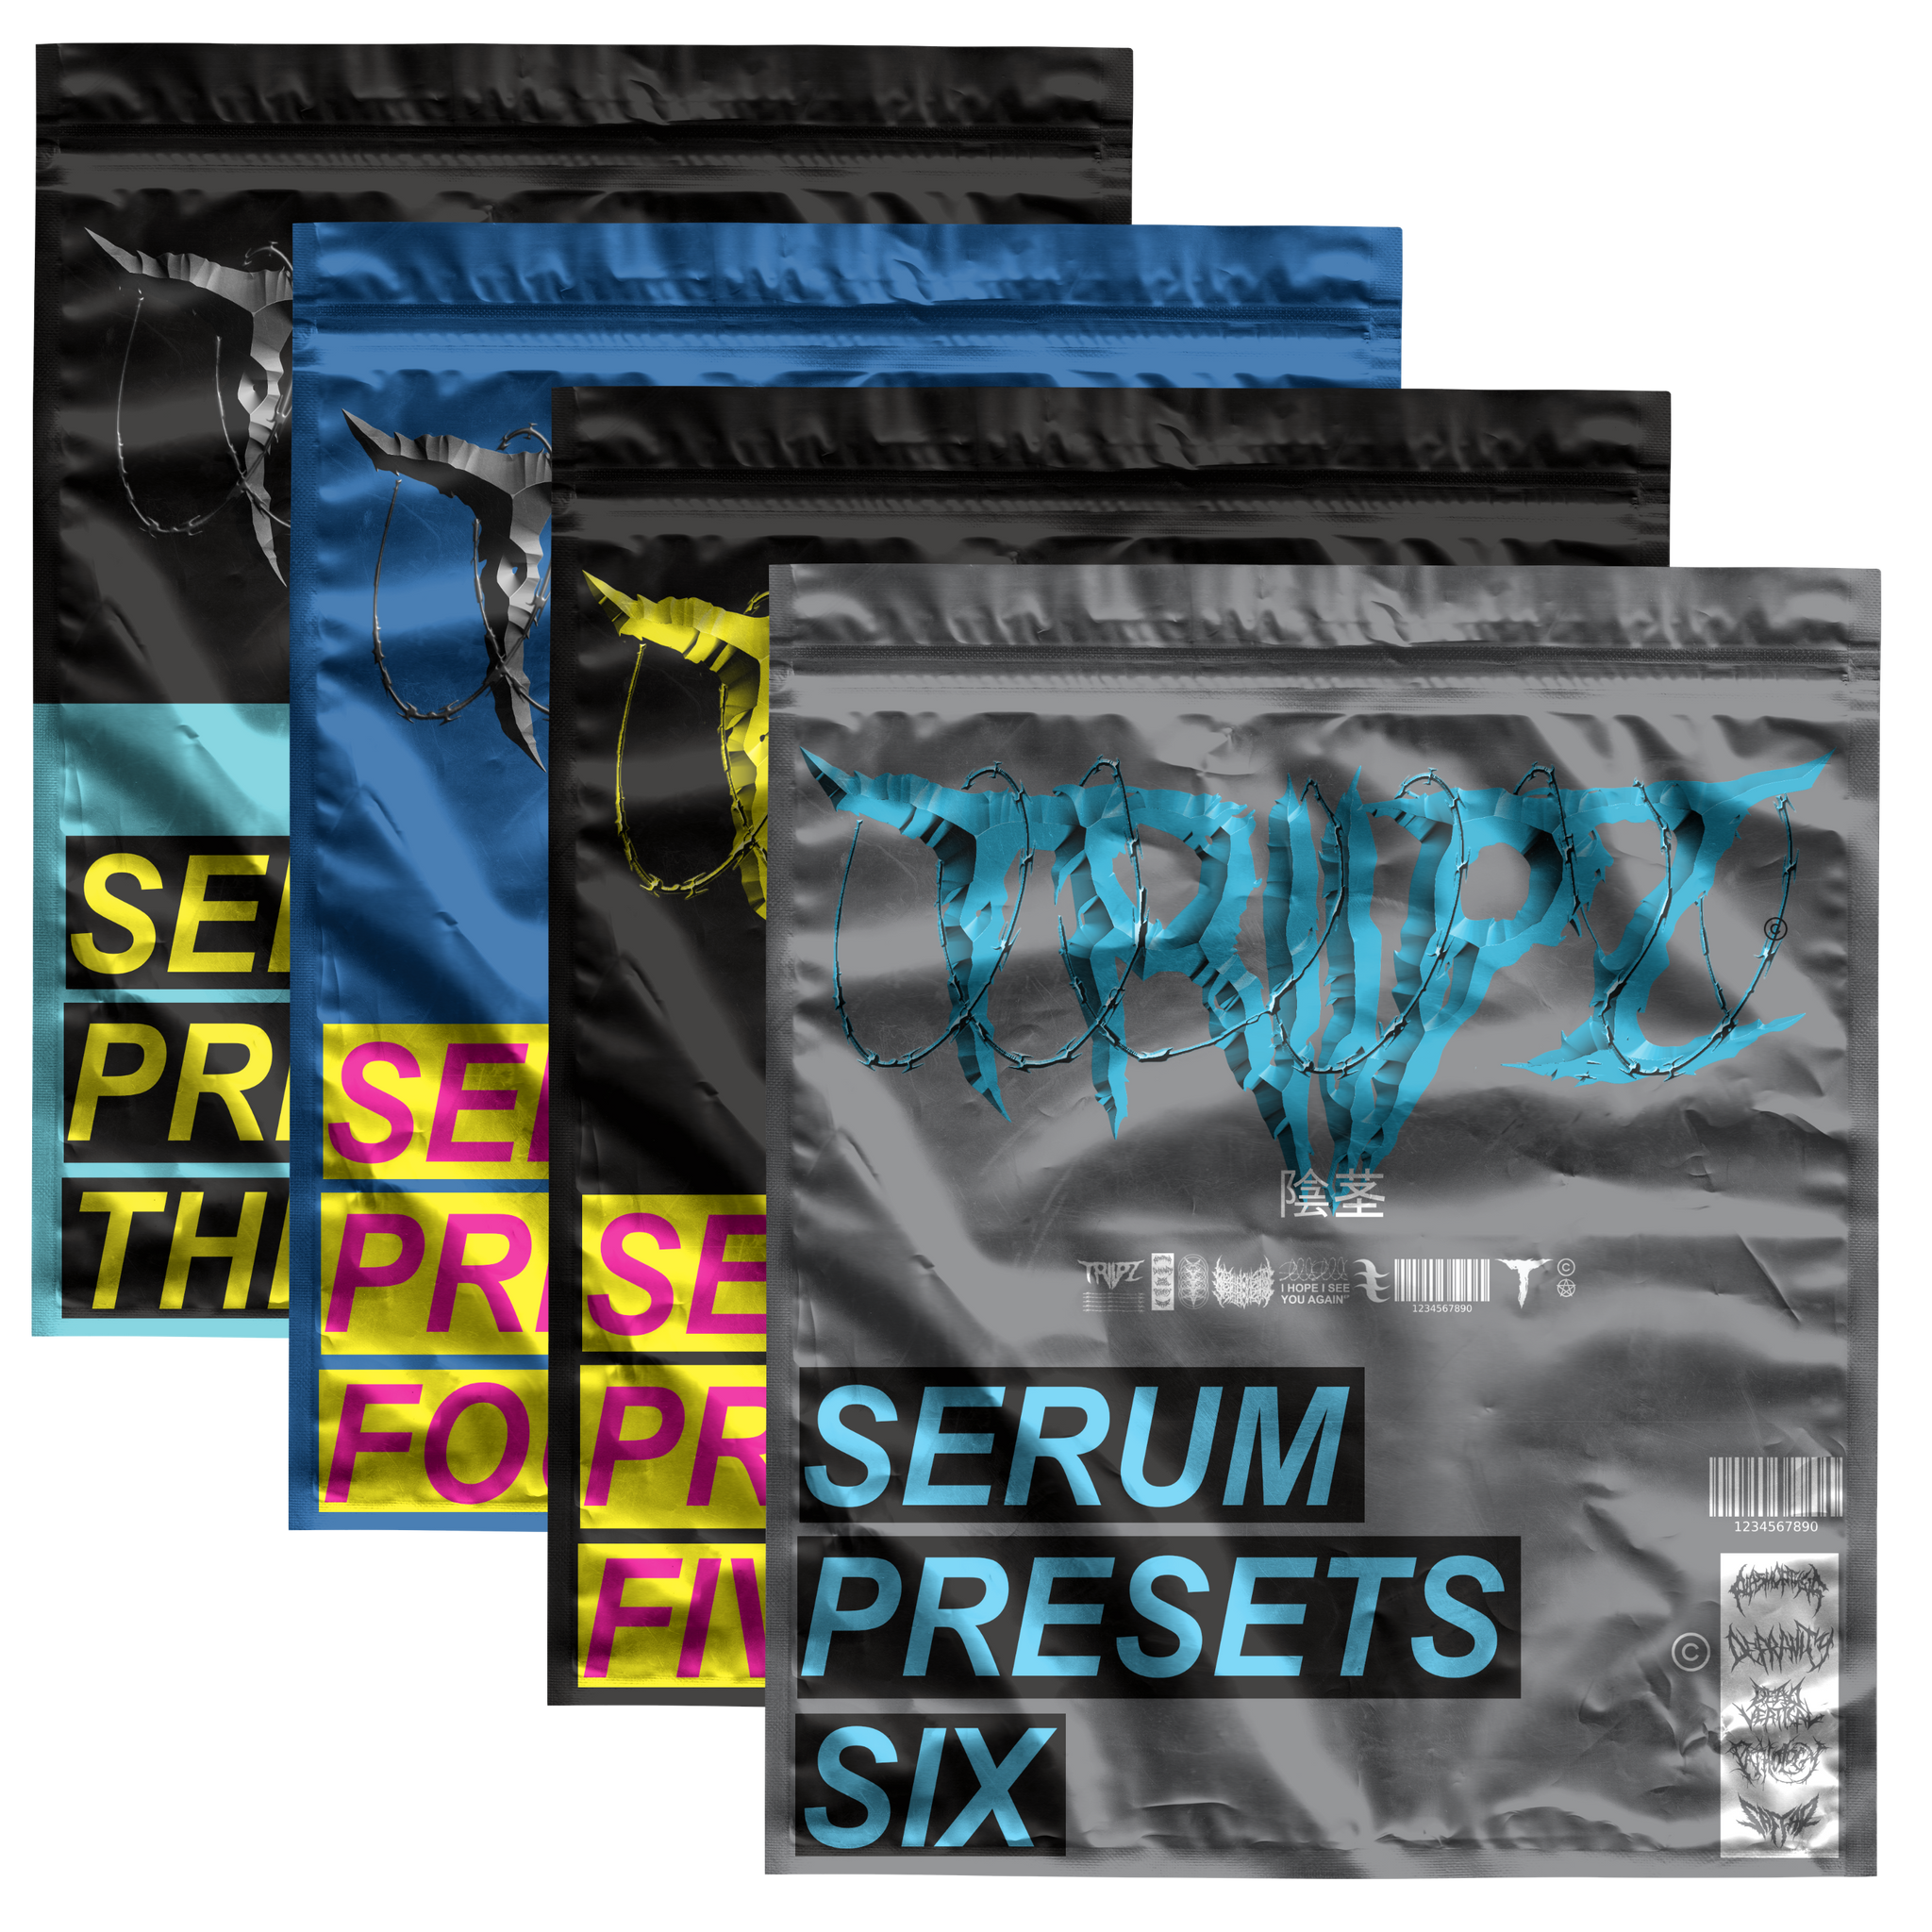 triipz serum presets bundle